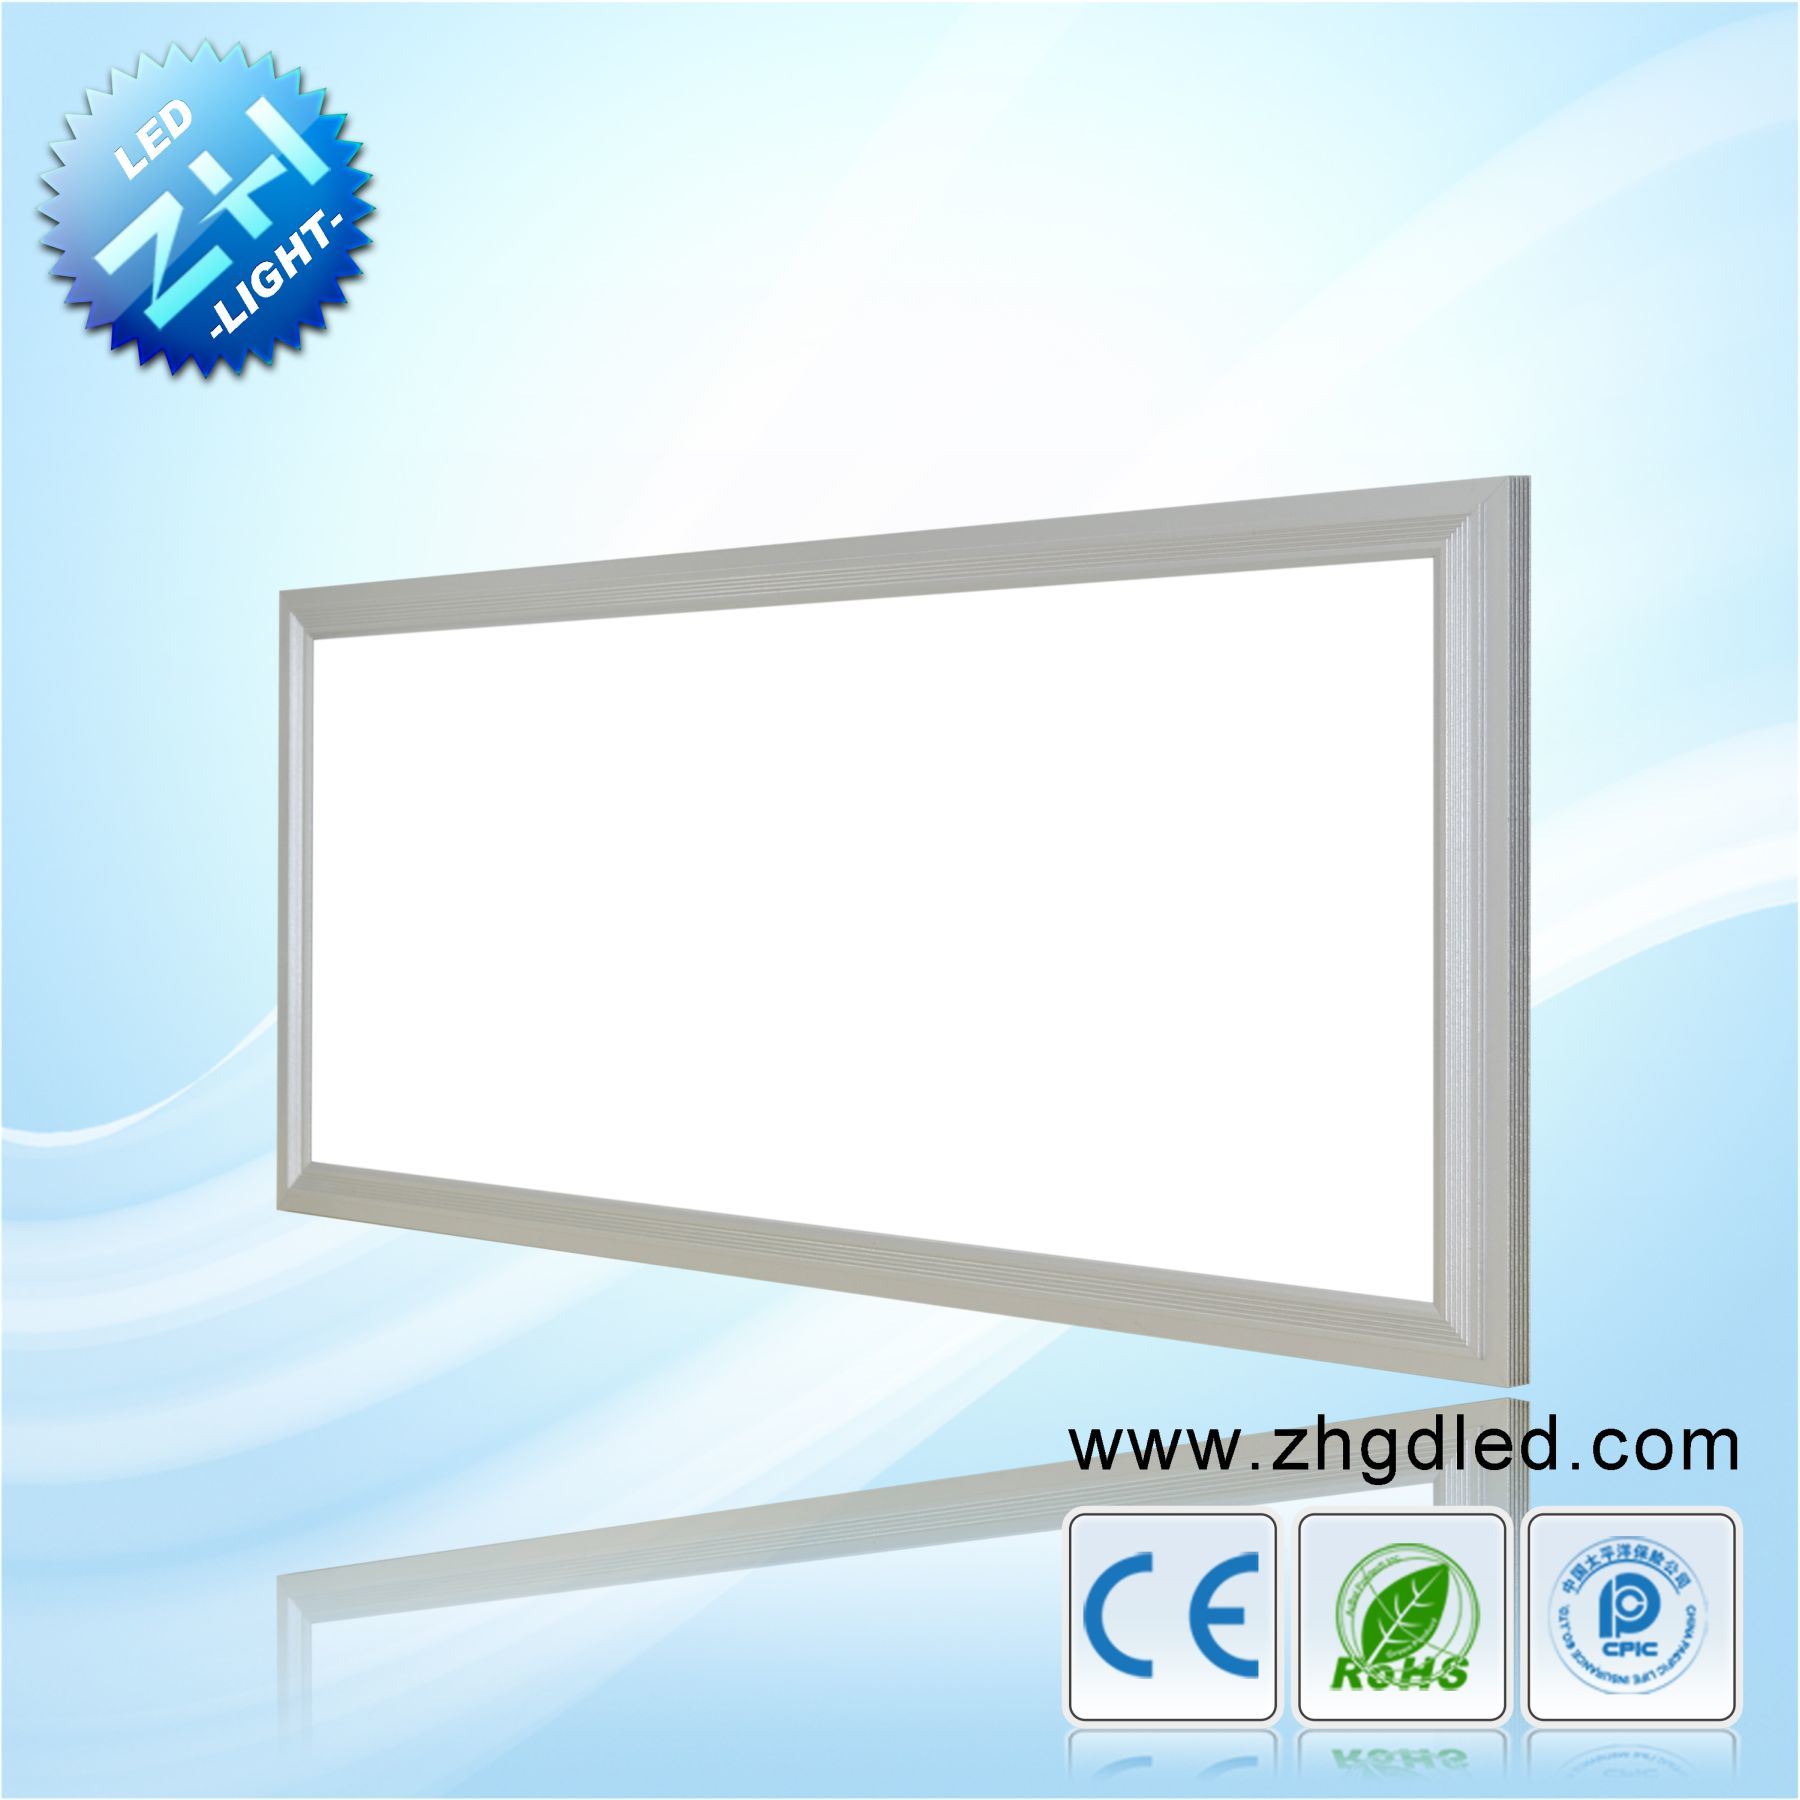 24W LED Panel Light / Ceiling Light (ZGE-MBD600WS300-24)